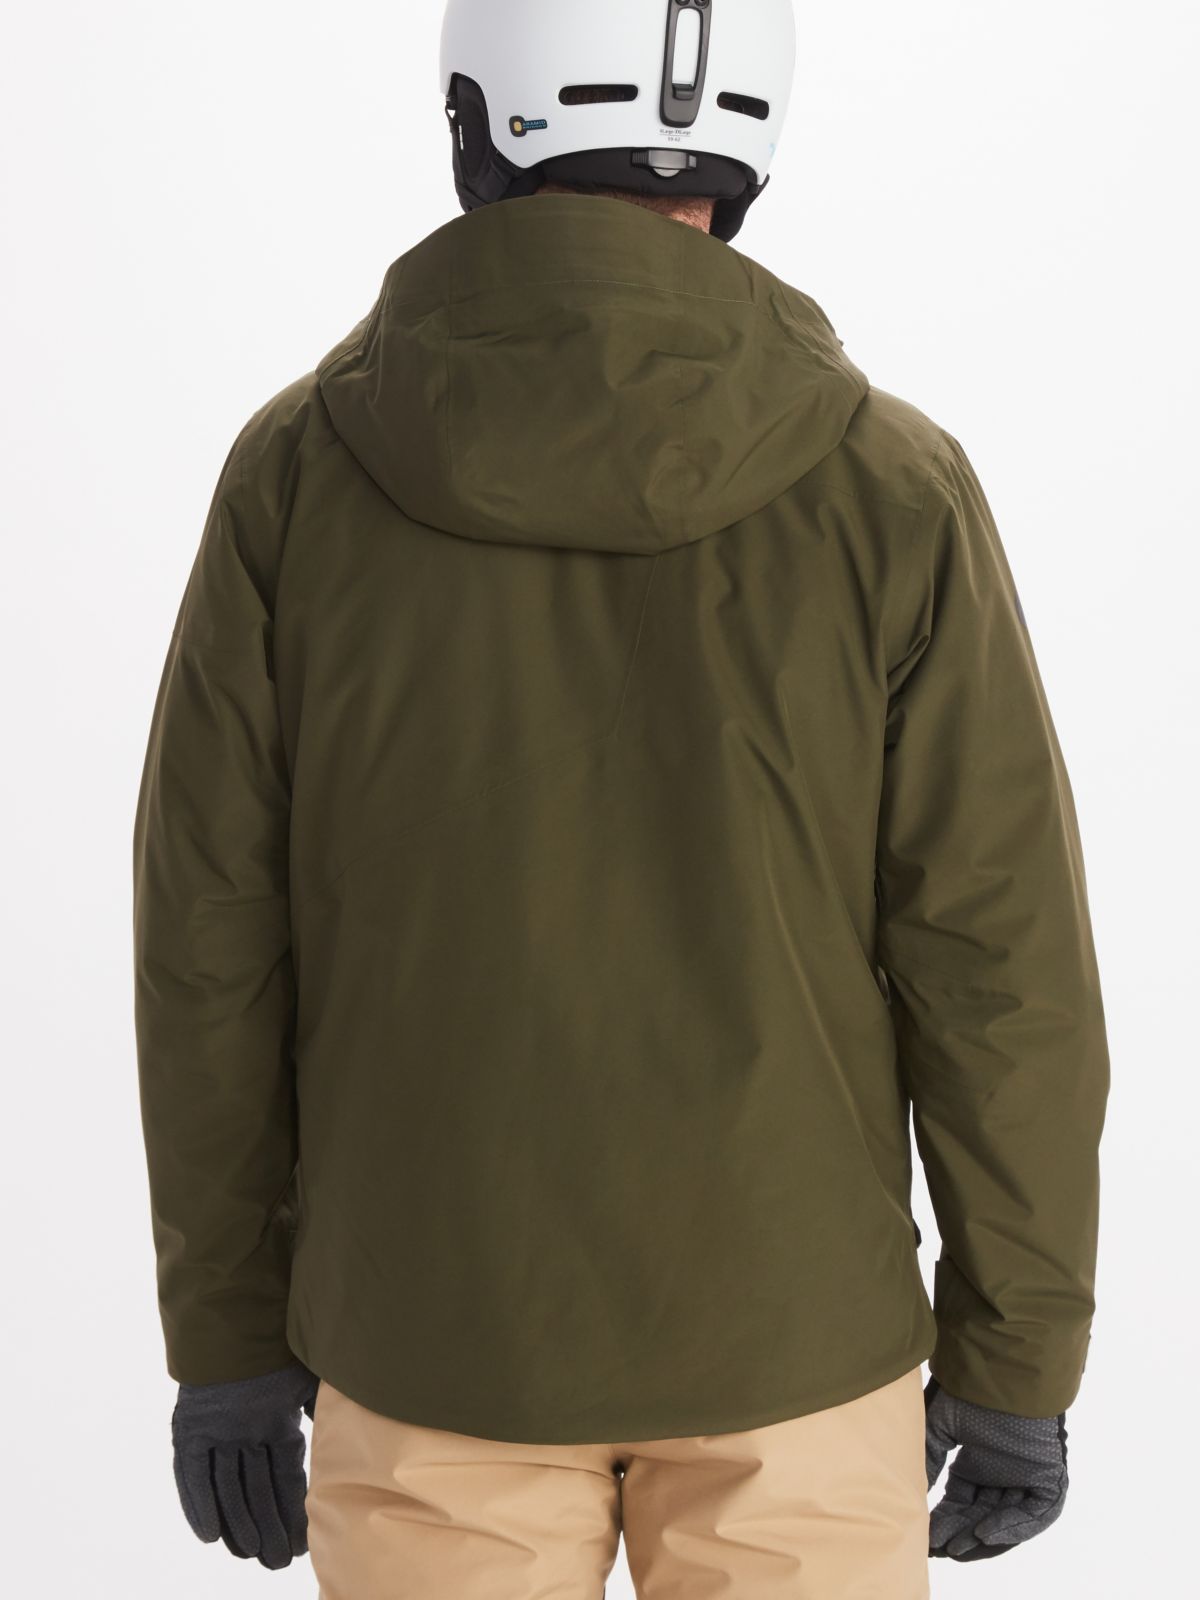 back view of Marmot mens ski jacket in dark green